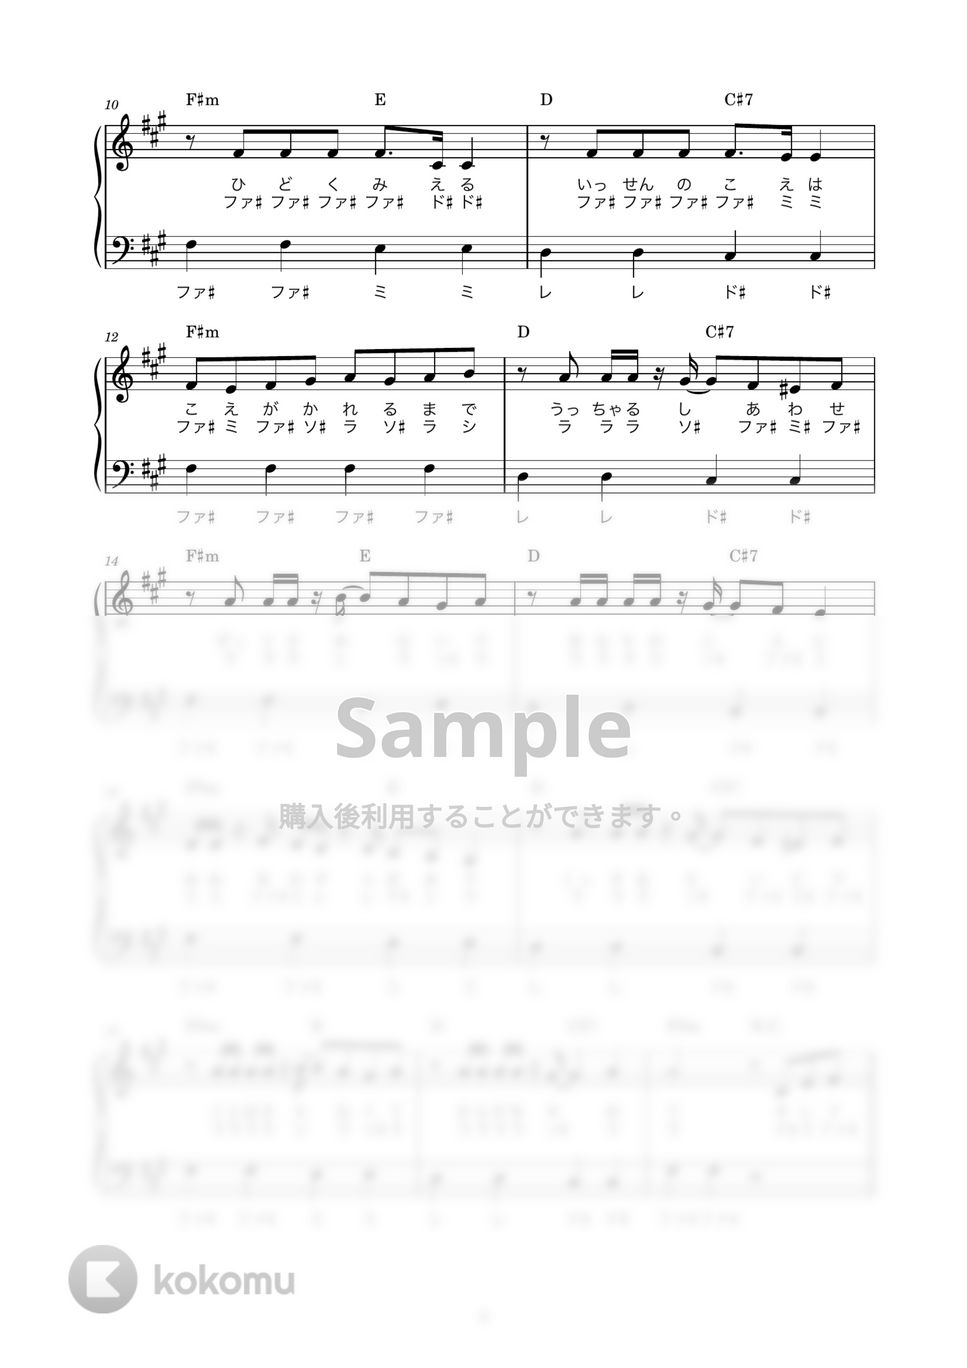 kanaria feat.GUMI - 酔いどれ知らず (かんたん / 歌詞付き / ドレミ付き / 初心者) by piano.tokyo